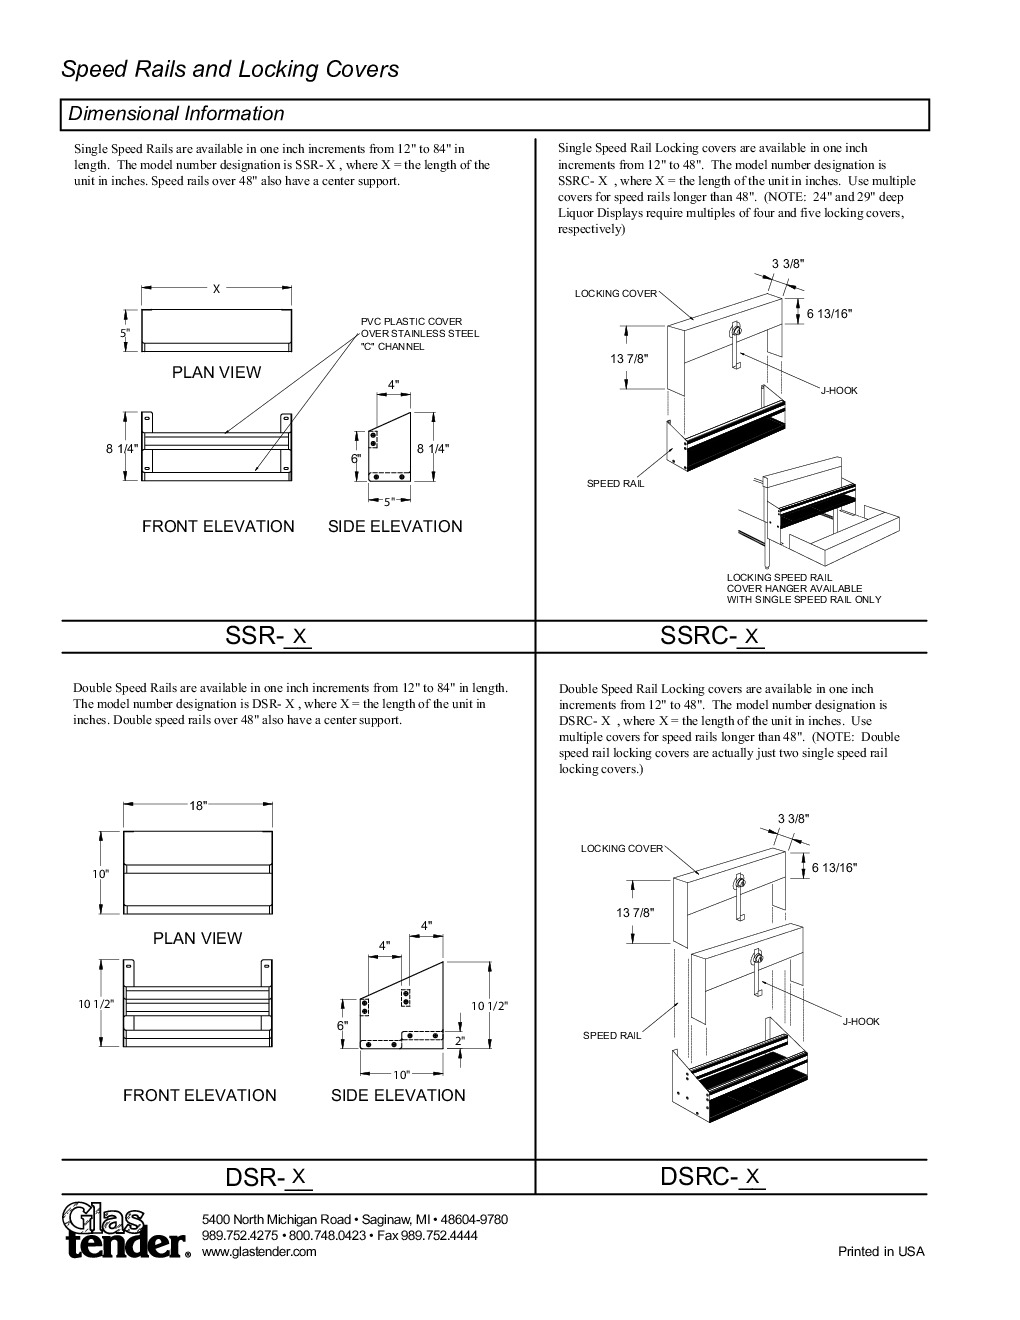 Glastender DSR-50 Speed Rail / Rack